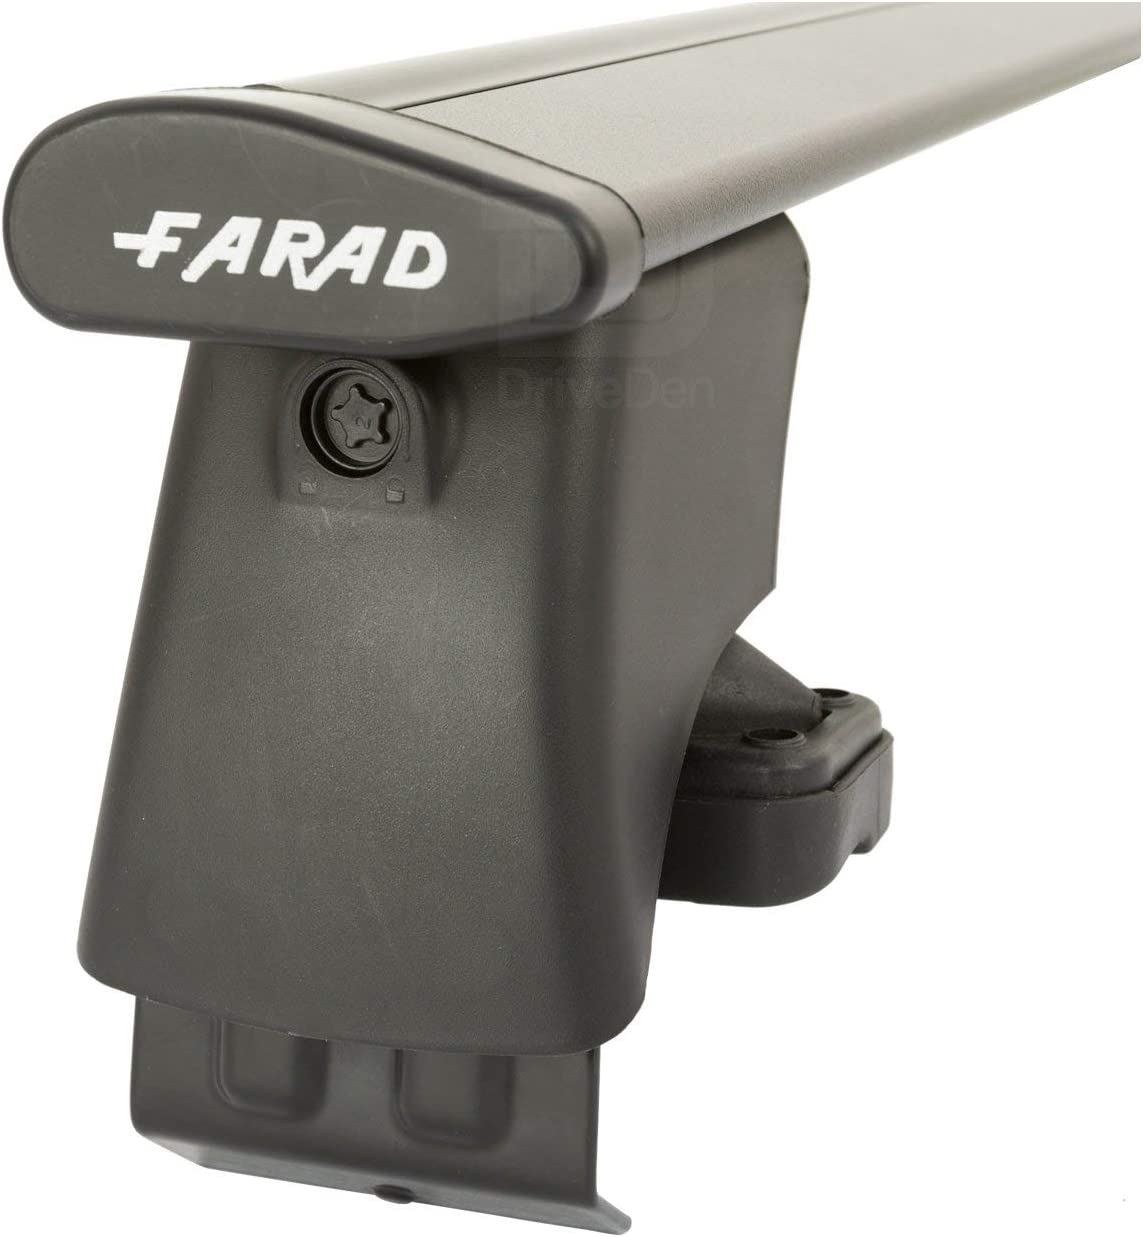 FARAD-Kit H2 per barre portatutto - Honda Insight 2009-2014 (senza corrimano)